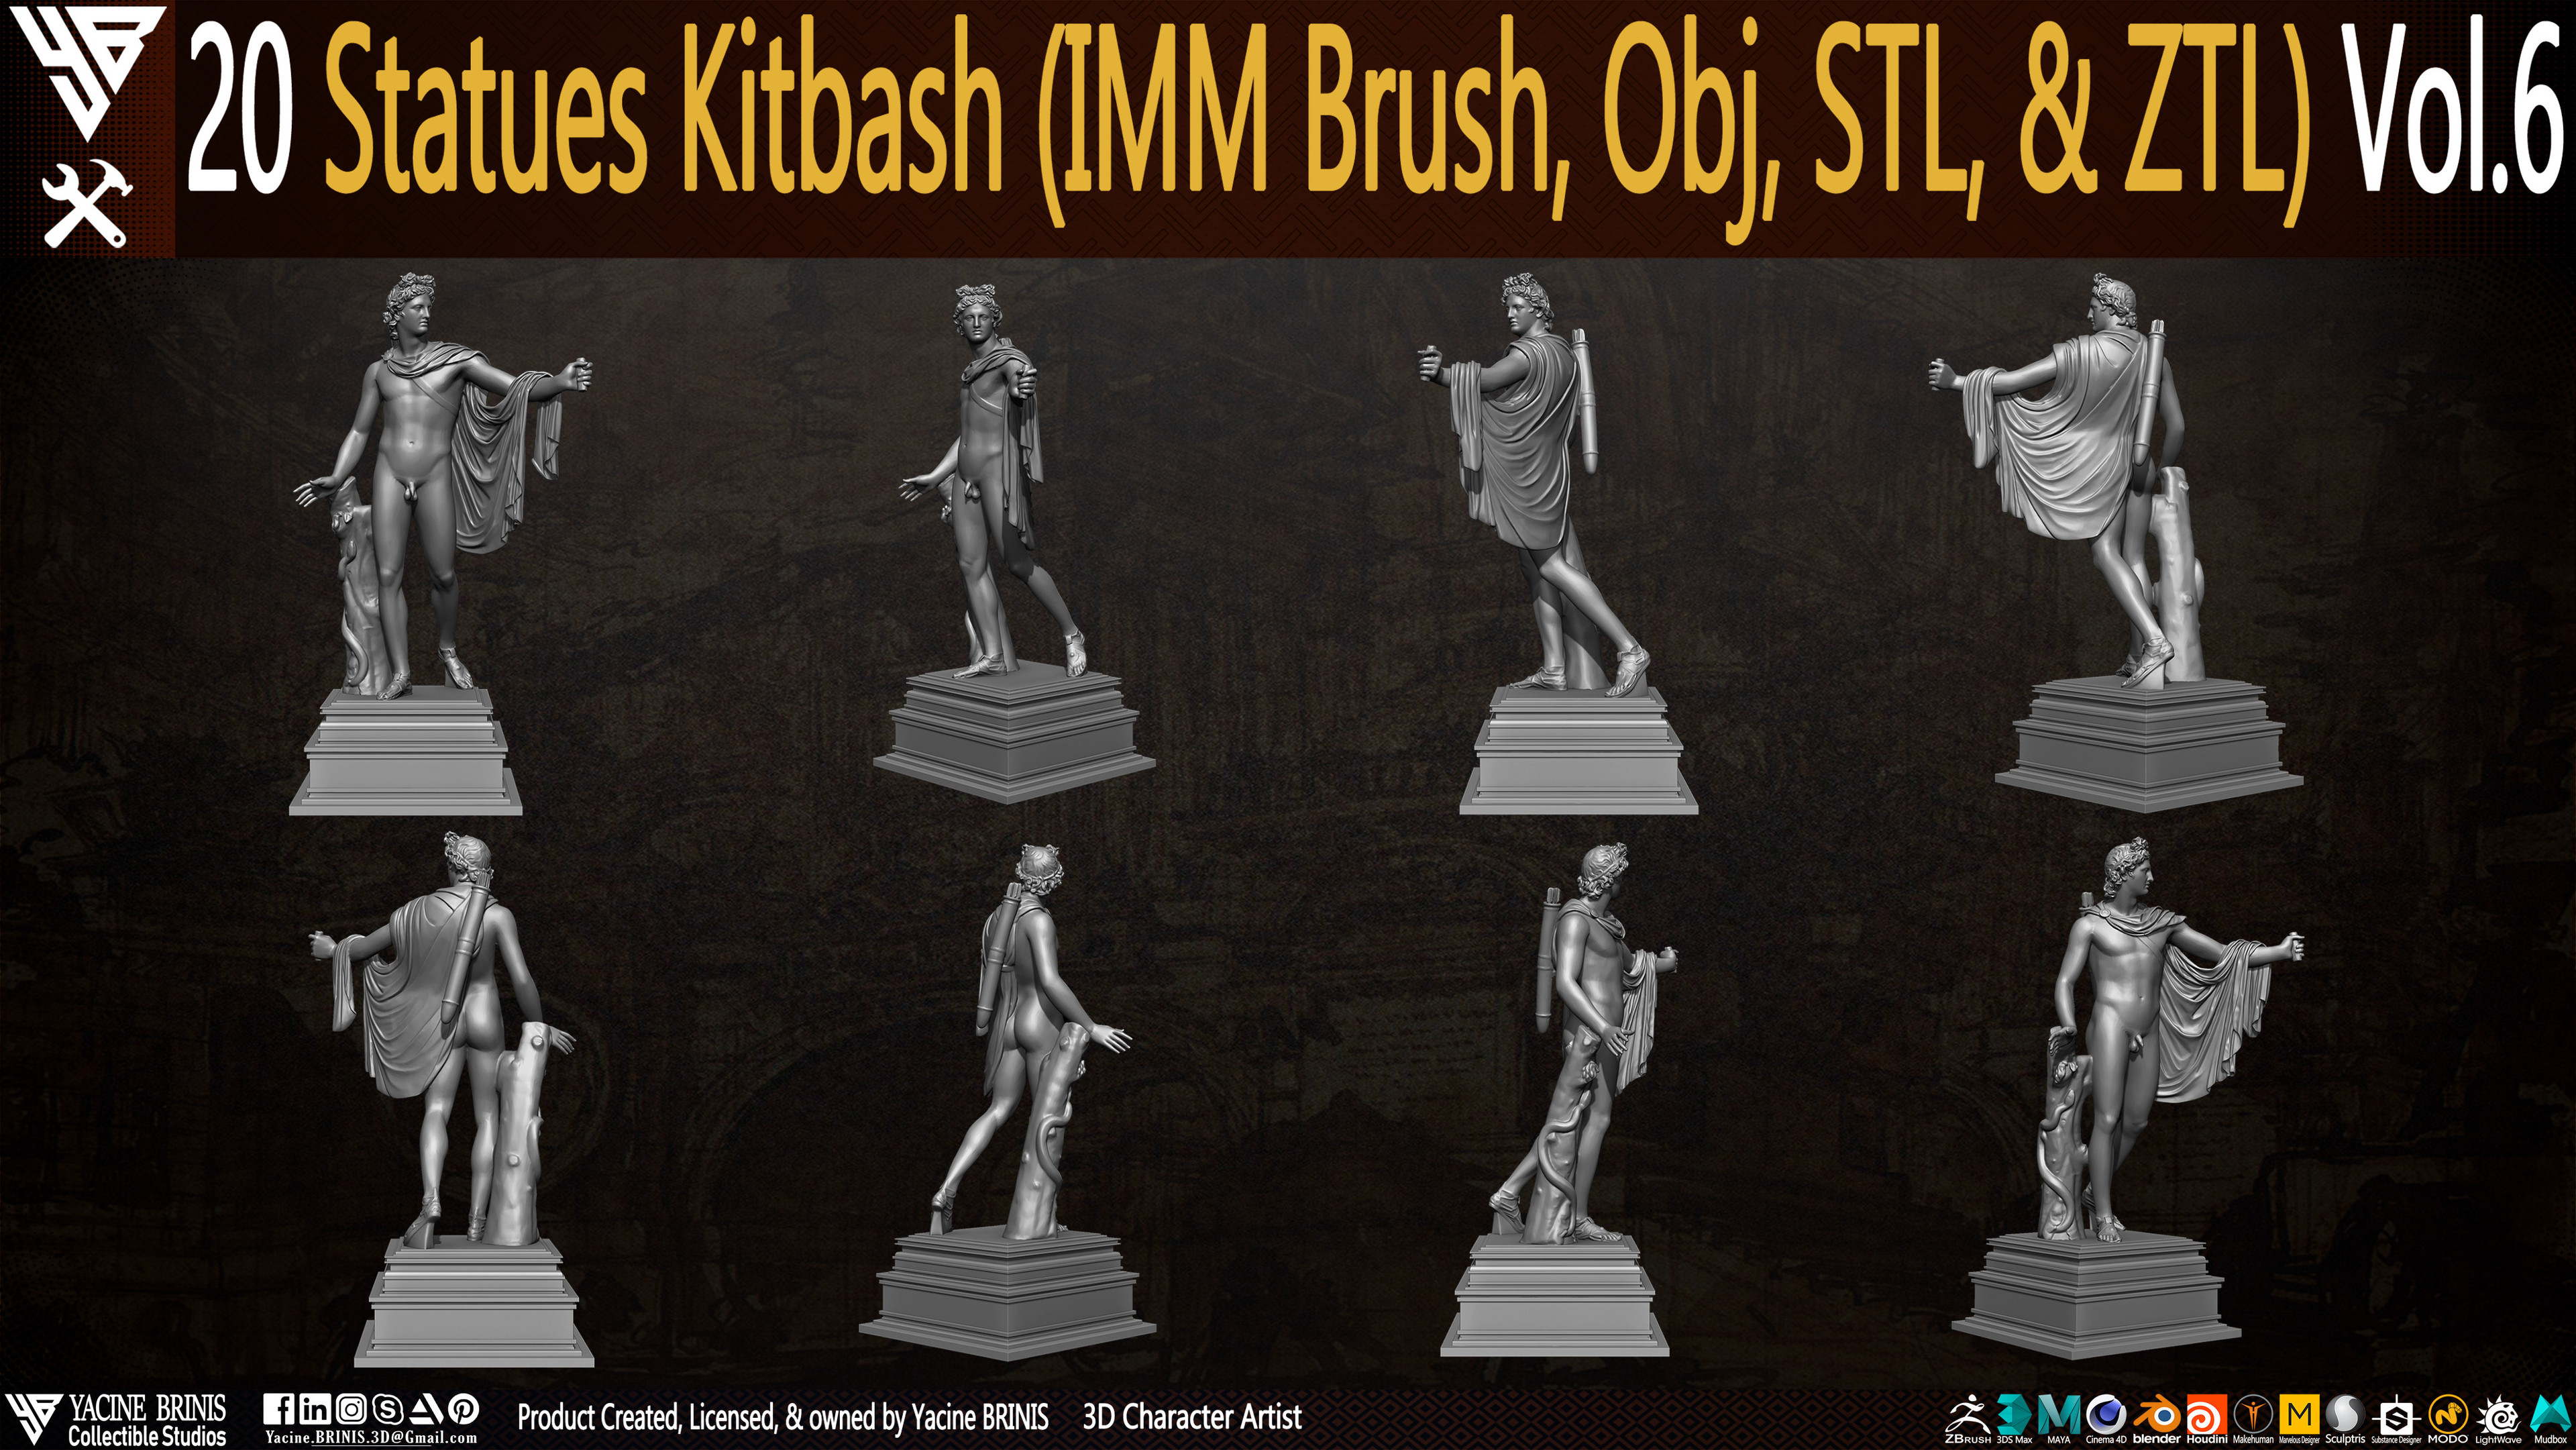 Statues Kitbash by yacine brinis Set 43